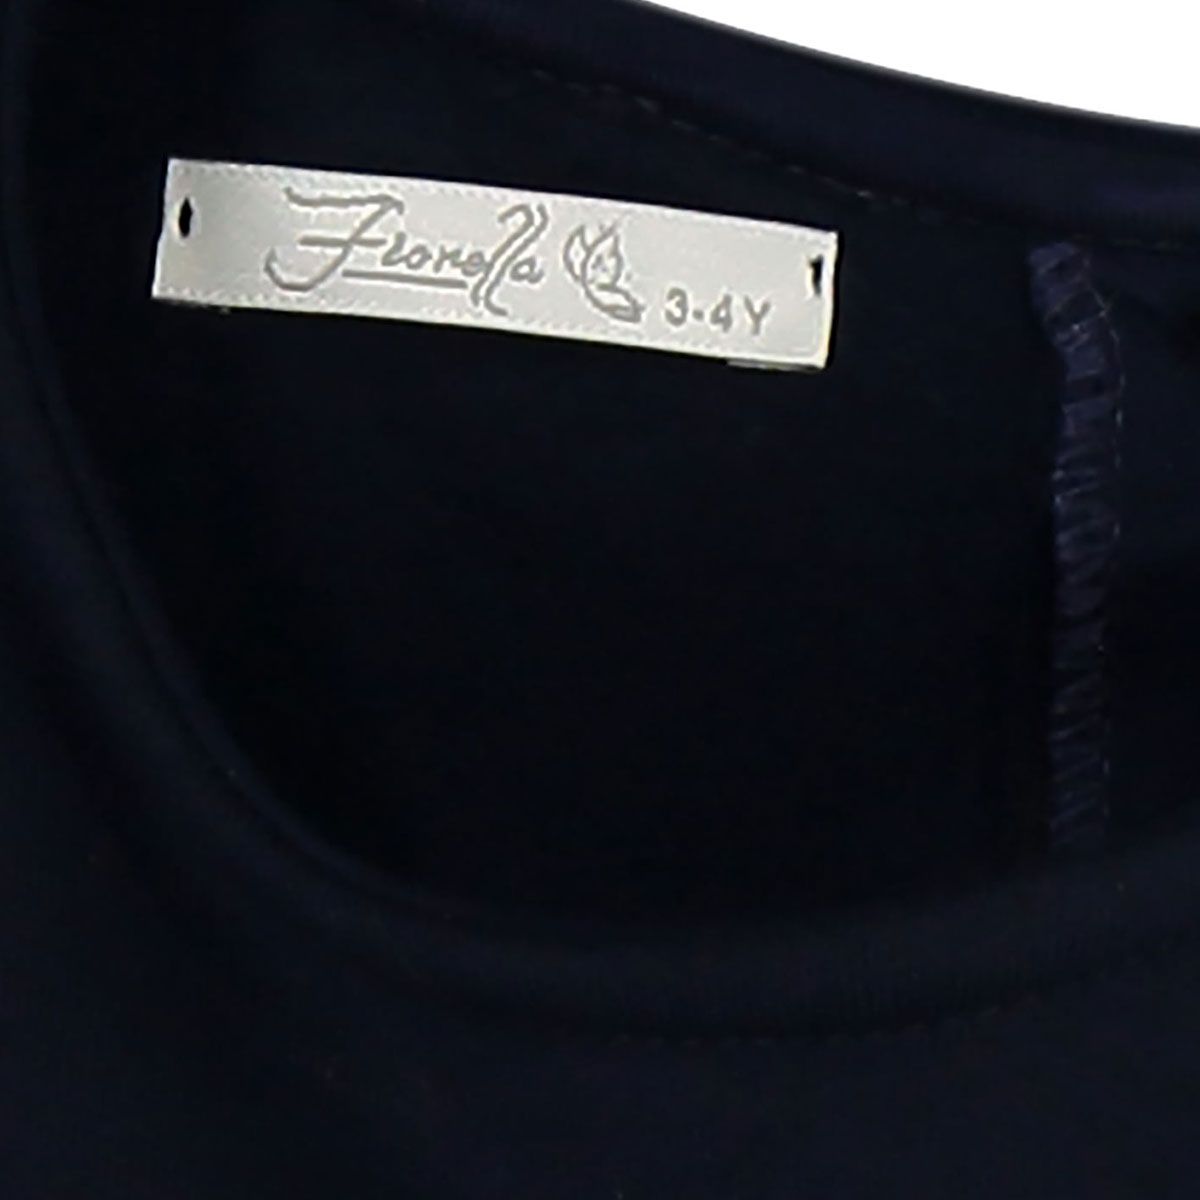 پیراهن دخترانه فیورلا مدل شایلین کد 31519 -  - 5